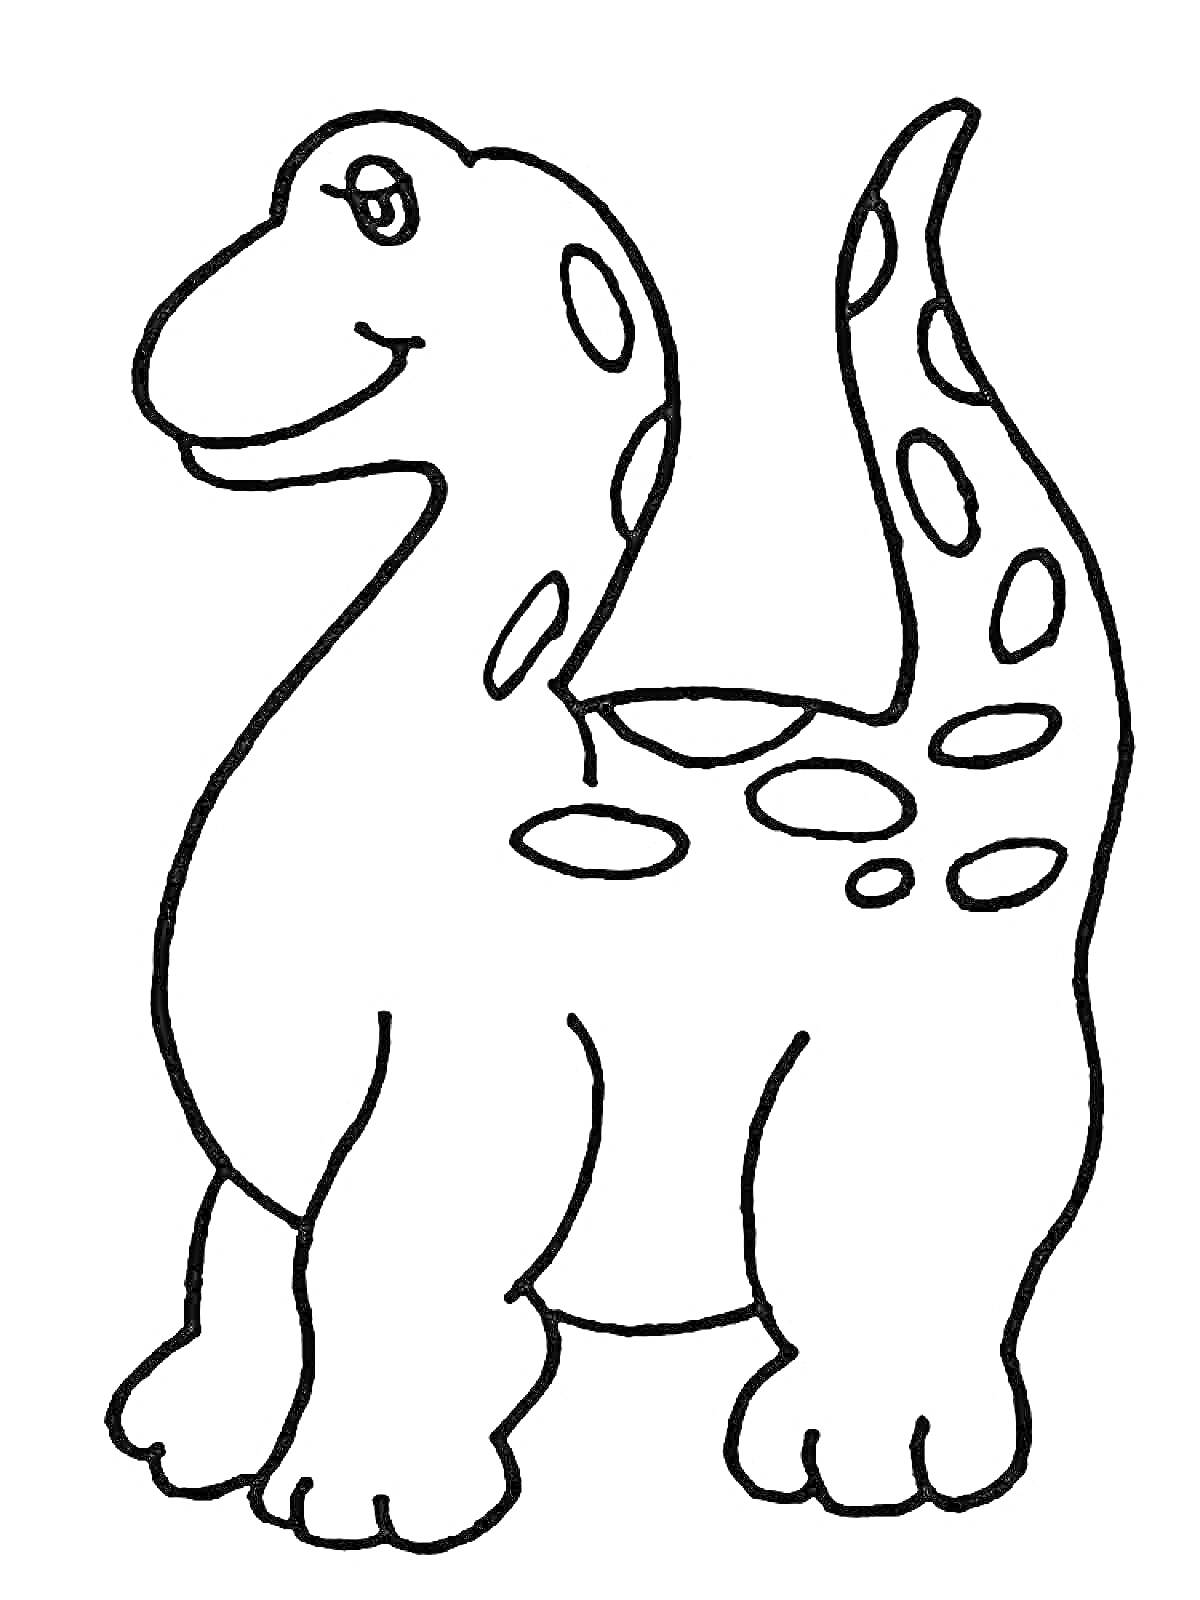 Дружелюбный динозавр с пятнами на теле